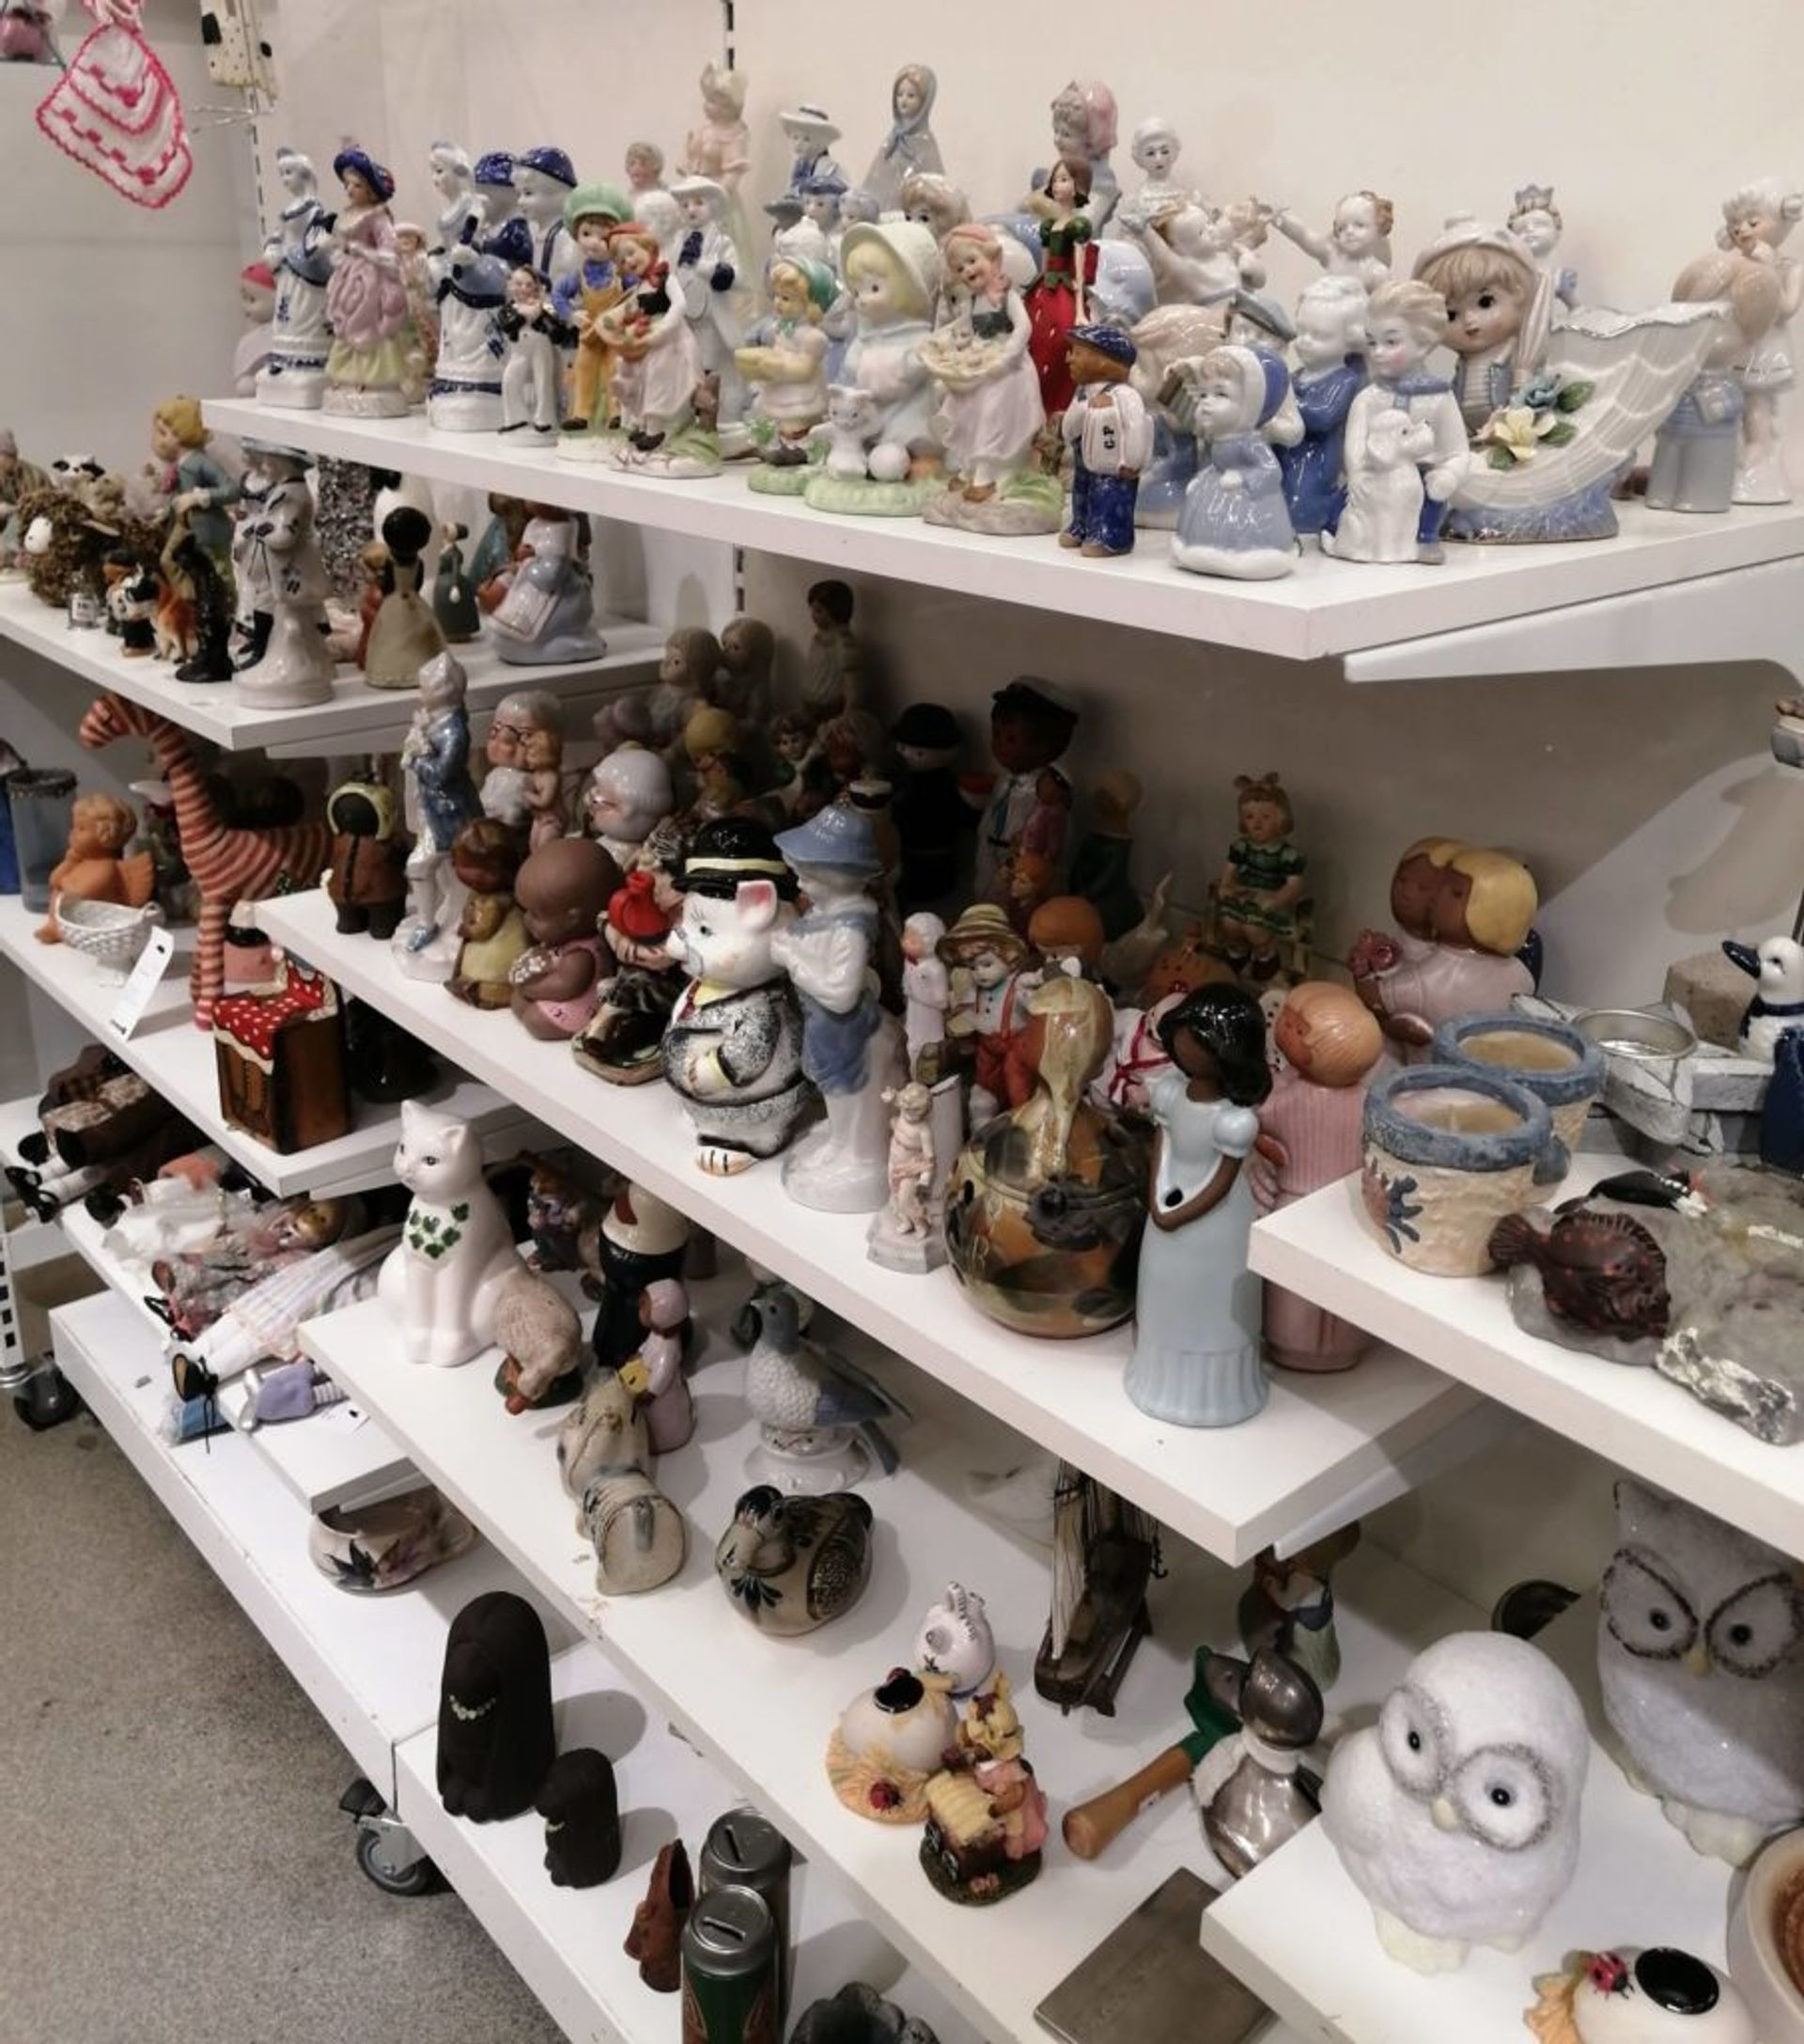 Shelves of ceramic figurines.